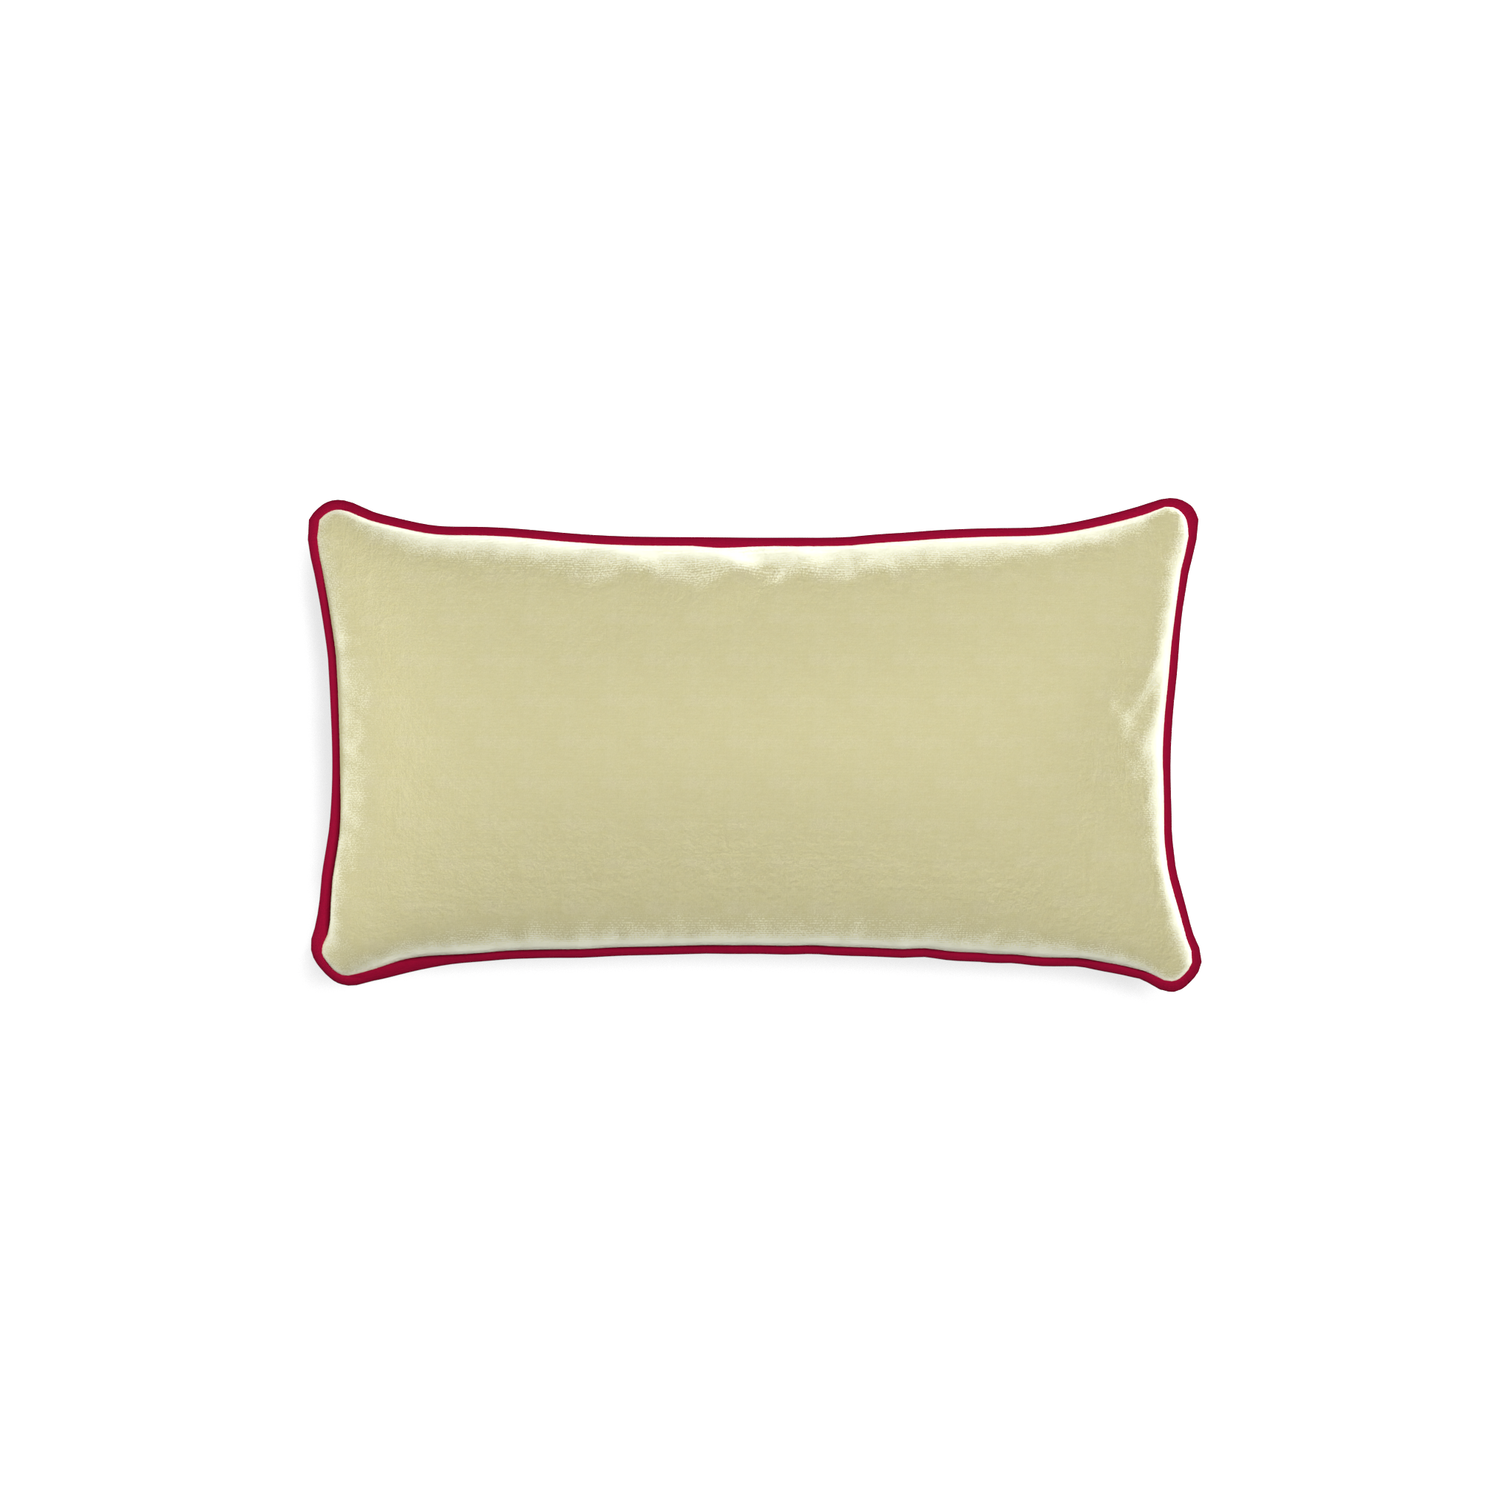 rectangle light green velvet pillow with dark red piping